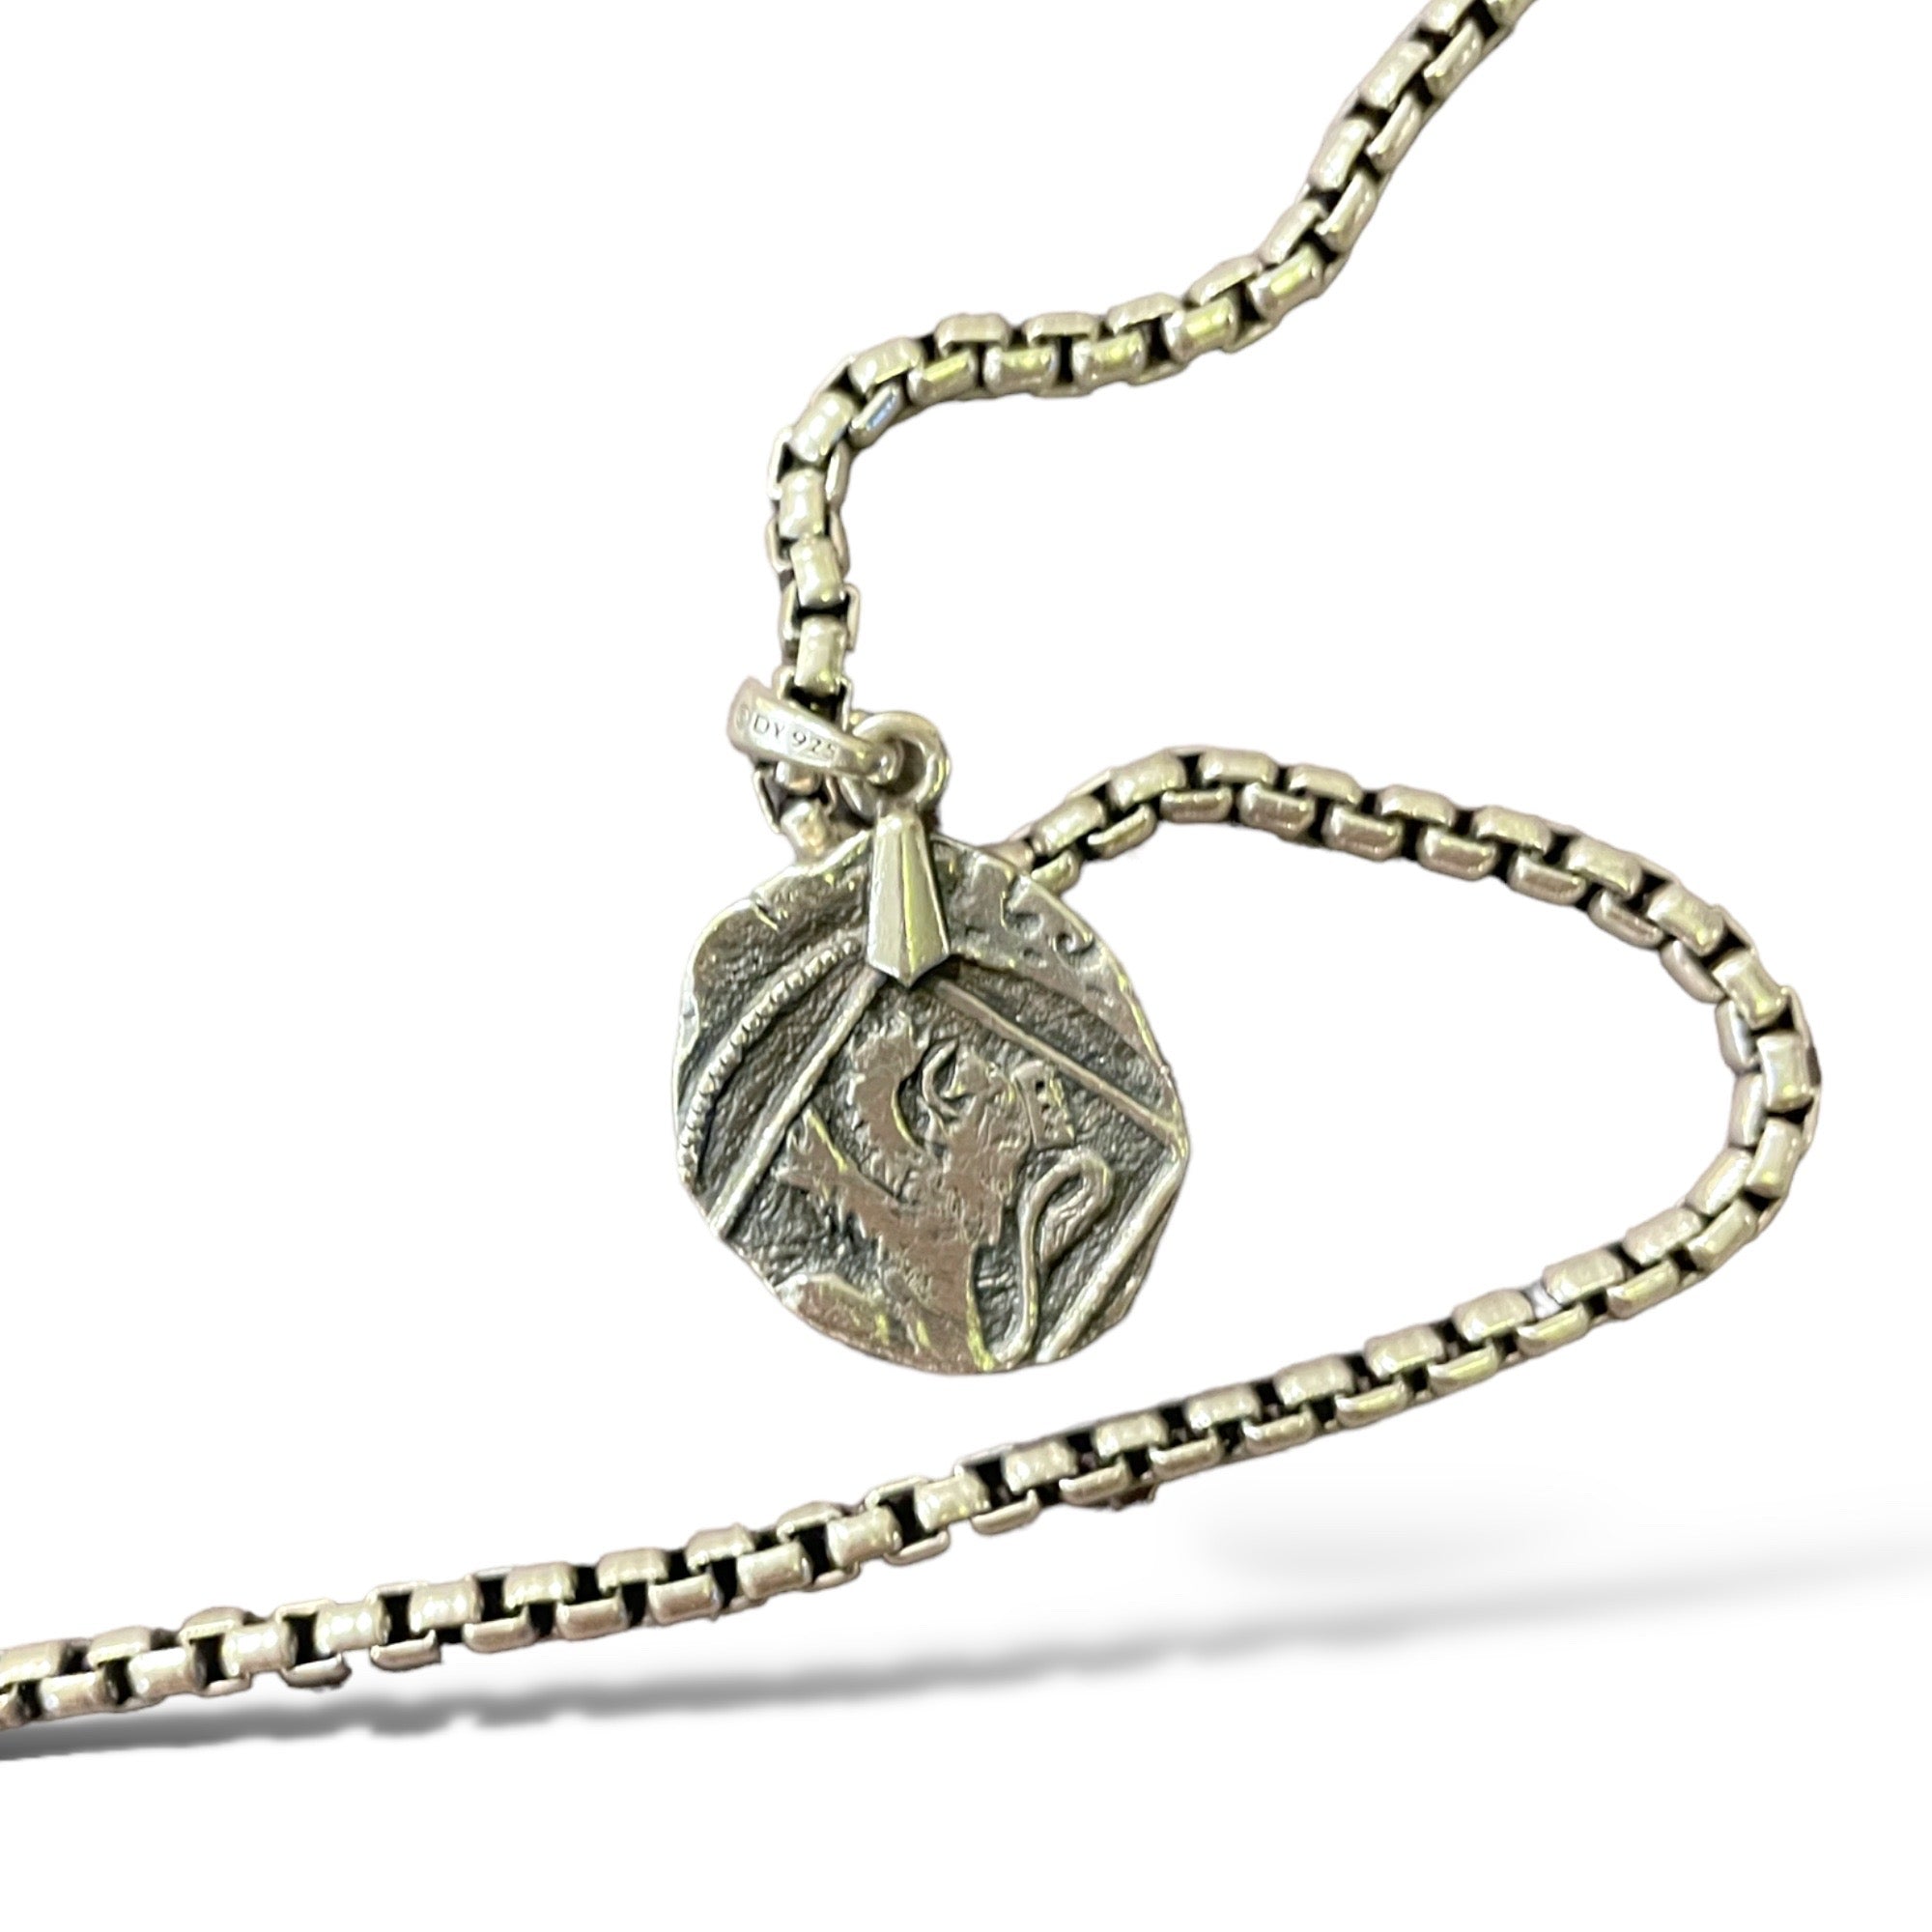 DAVID YURMAN 5.2mm Box Chain Necklace & Shipwreck Coin Amulet